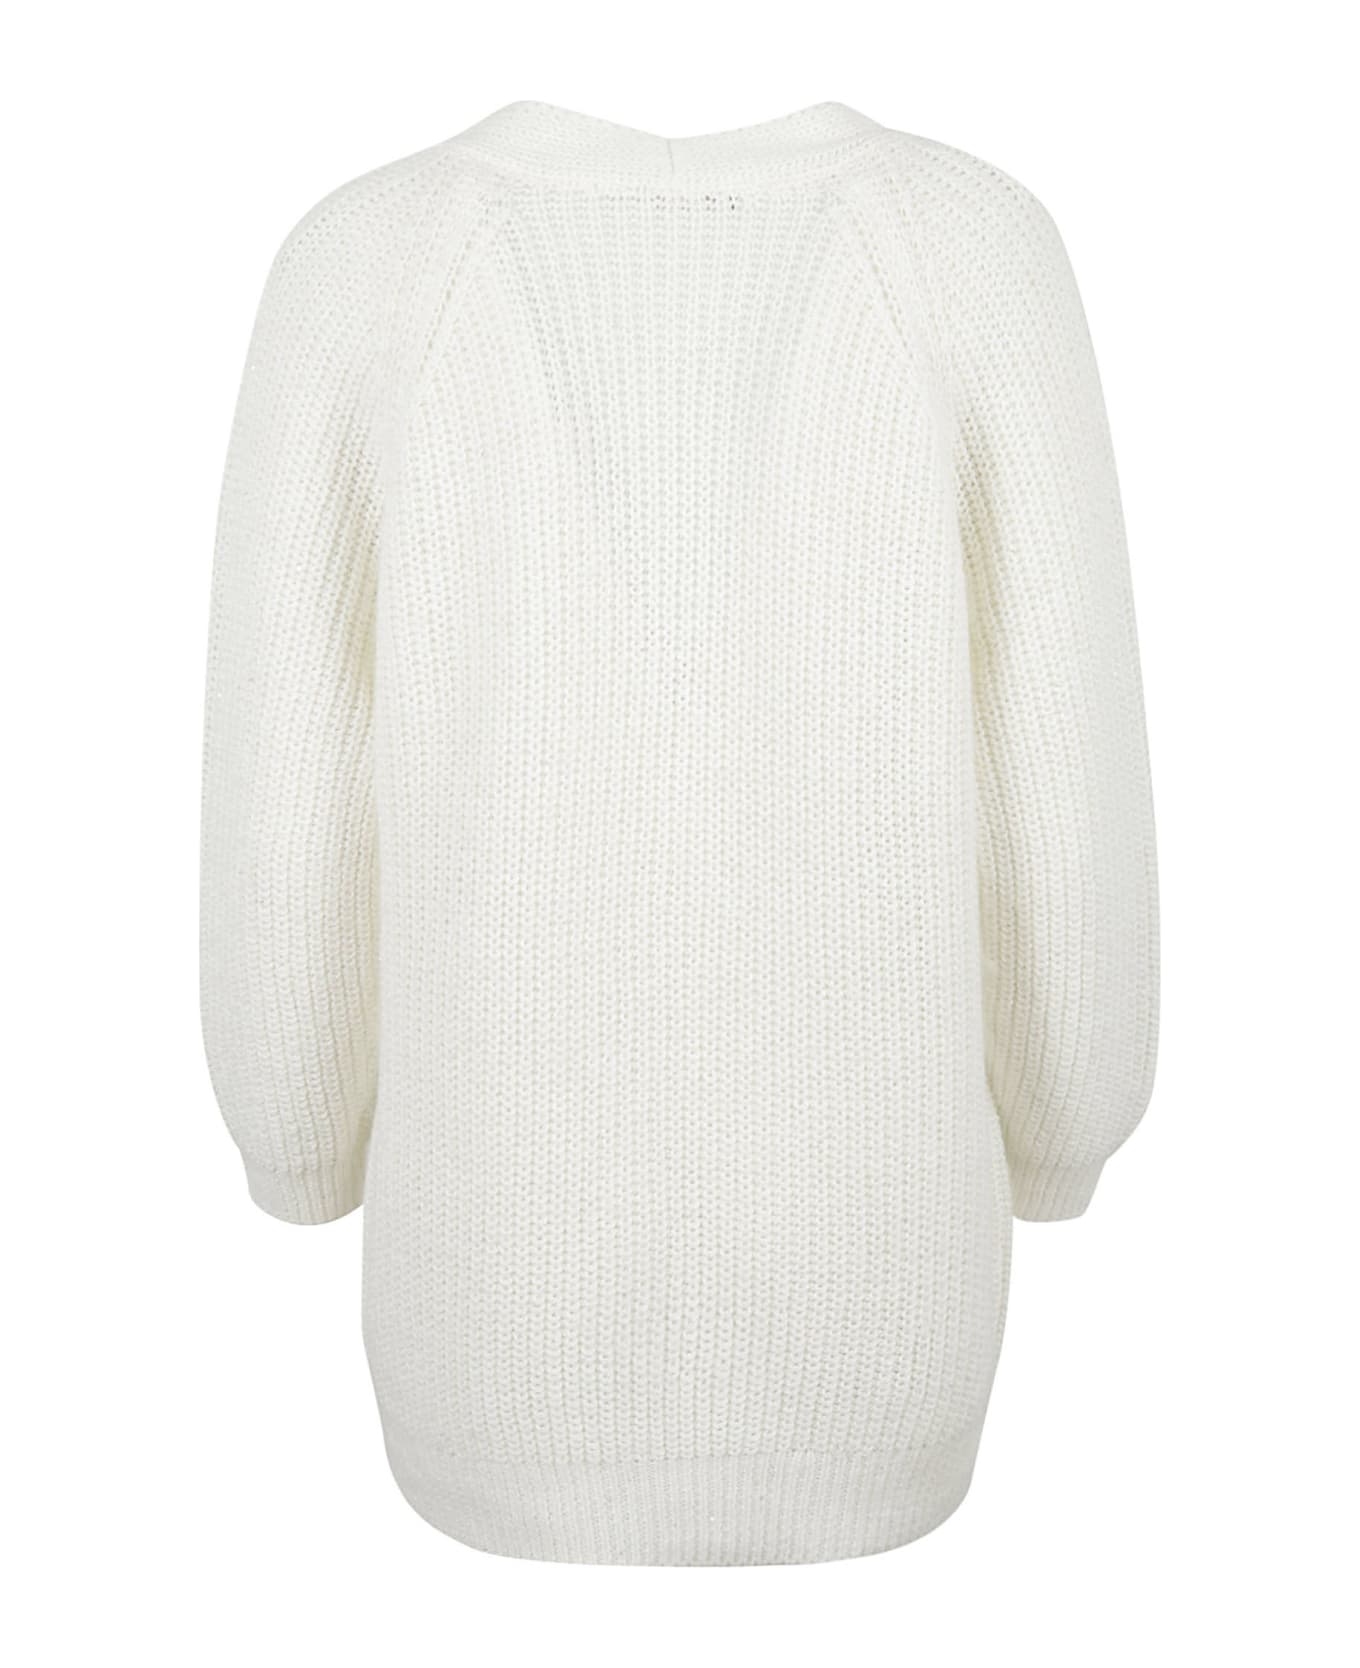 Fabiana Filippi Oversized Knit Plain Cardigan - White